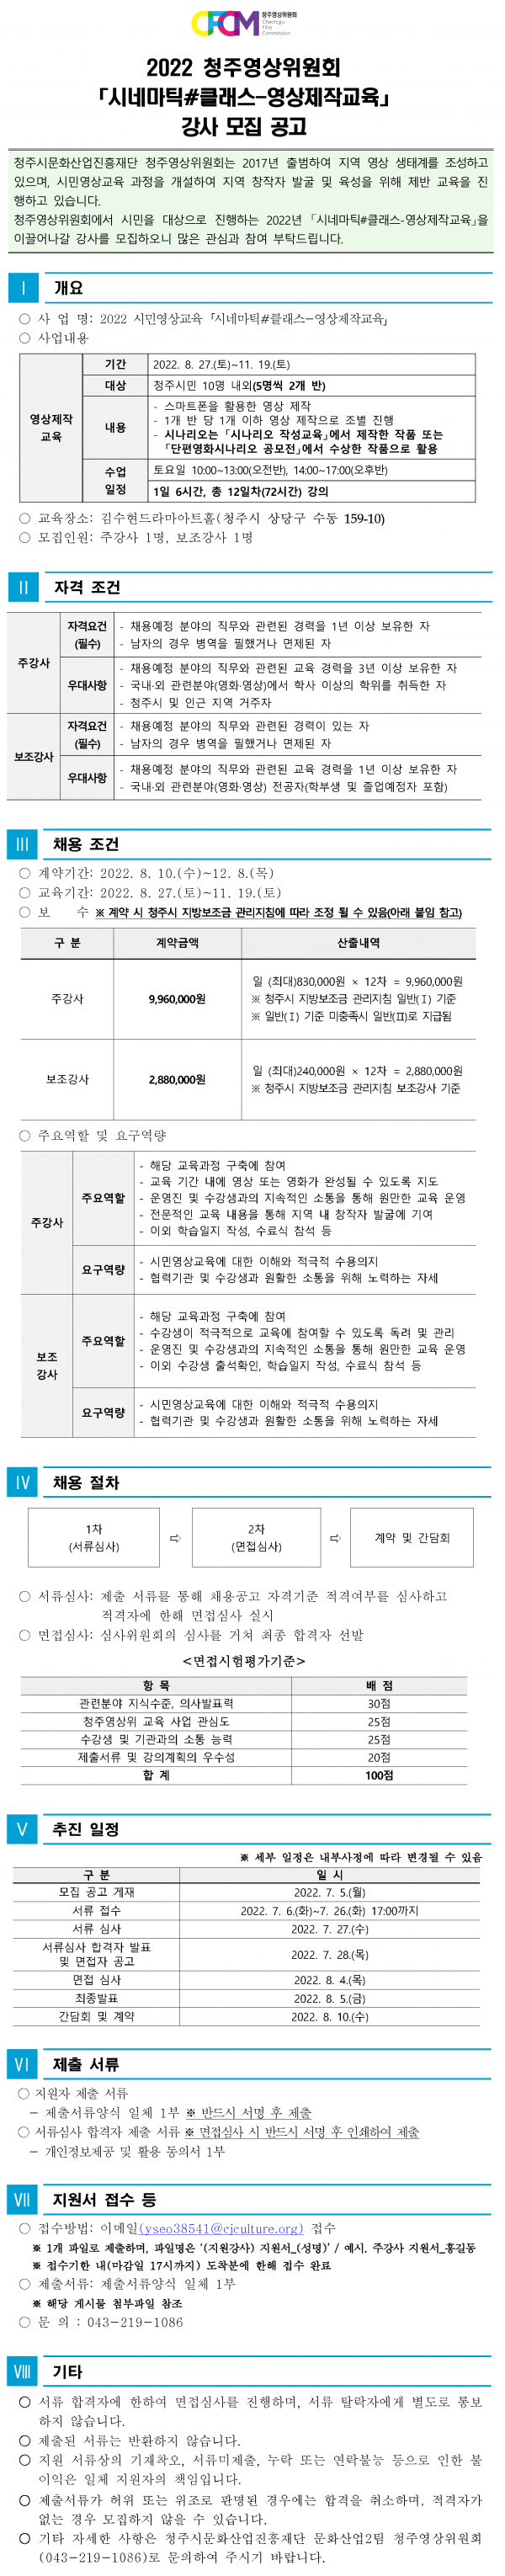 2022 청주영상위원회 시네마틱#클래스(영상 제작 교육) 강사 모집